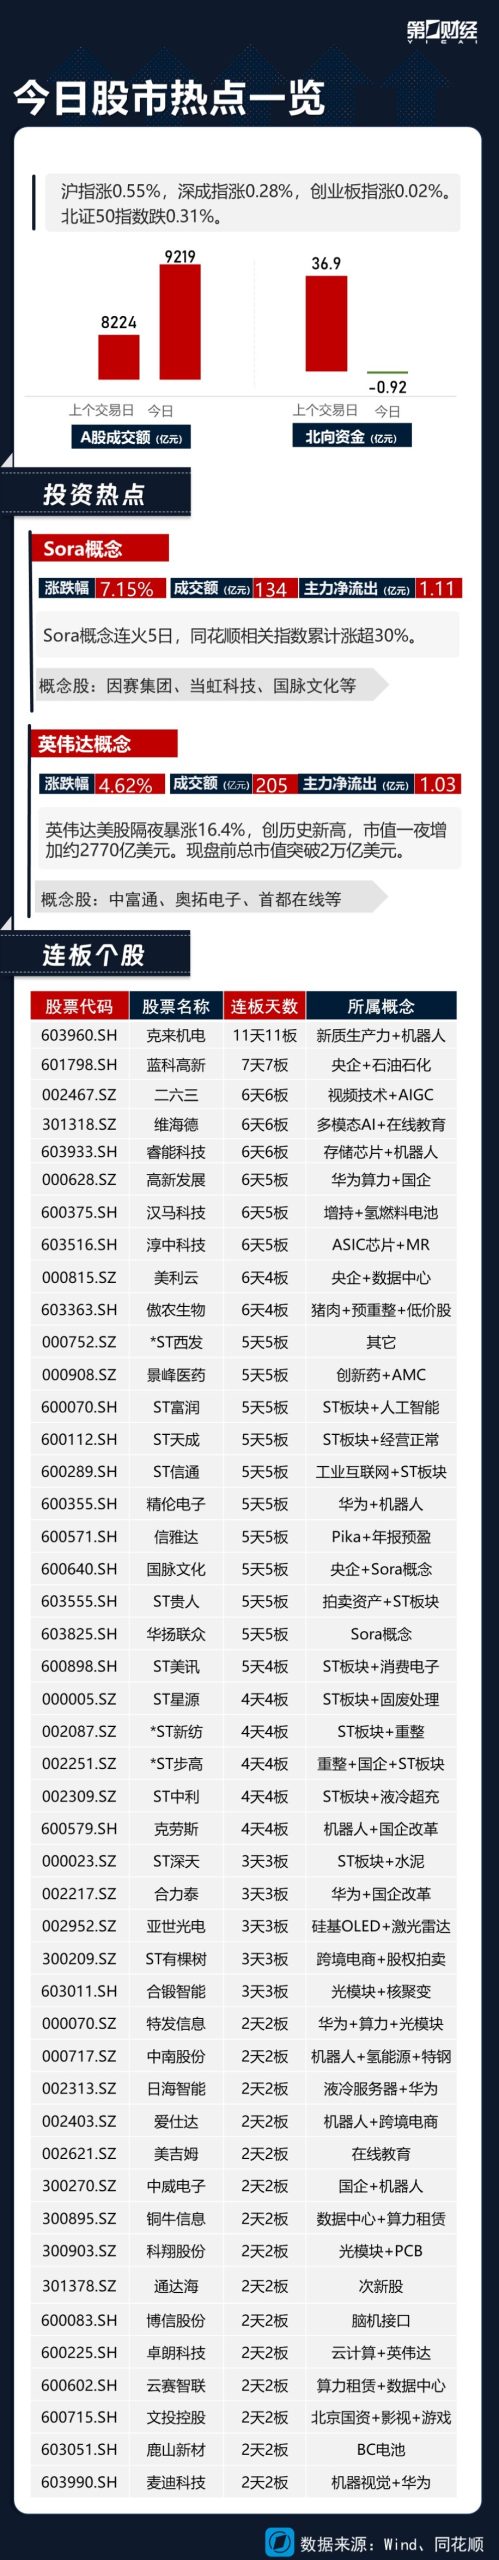 热市追踪丨沪指8连阳站上3000点 Sora概念本周涨逾30%-公闻财经